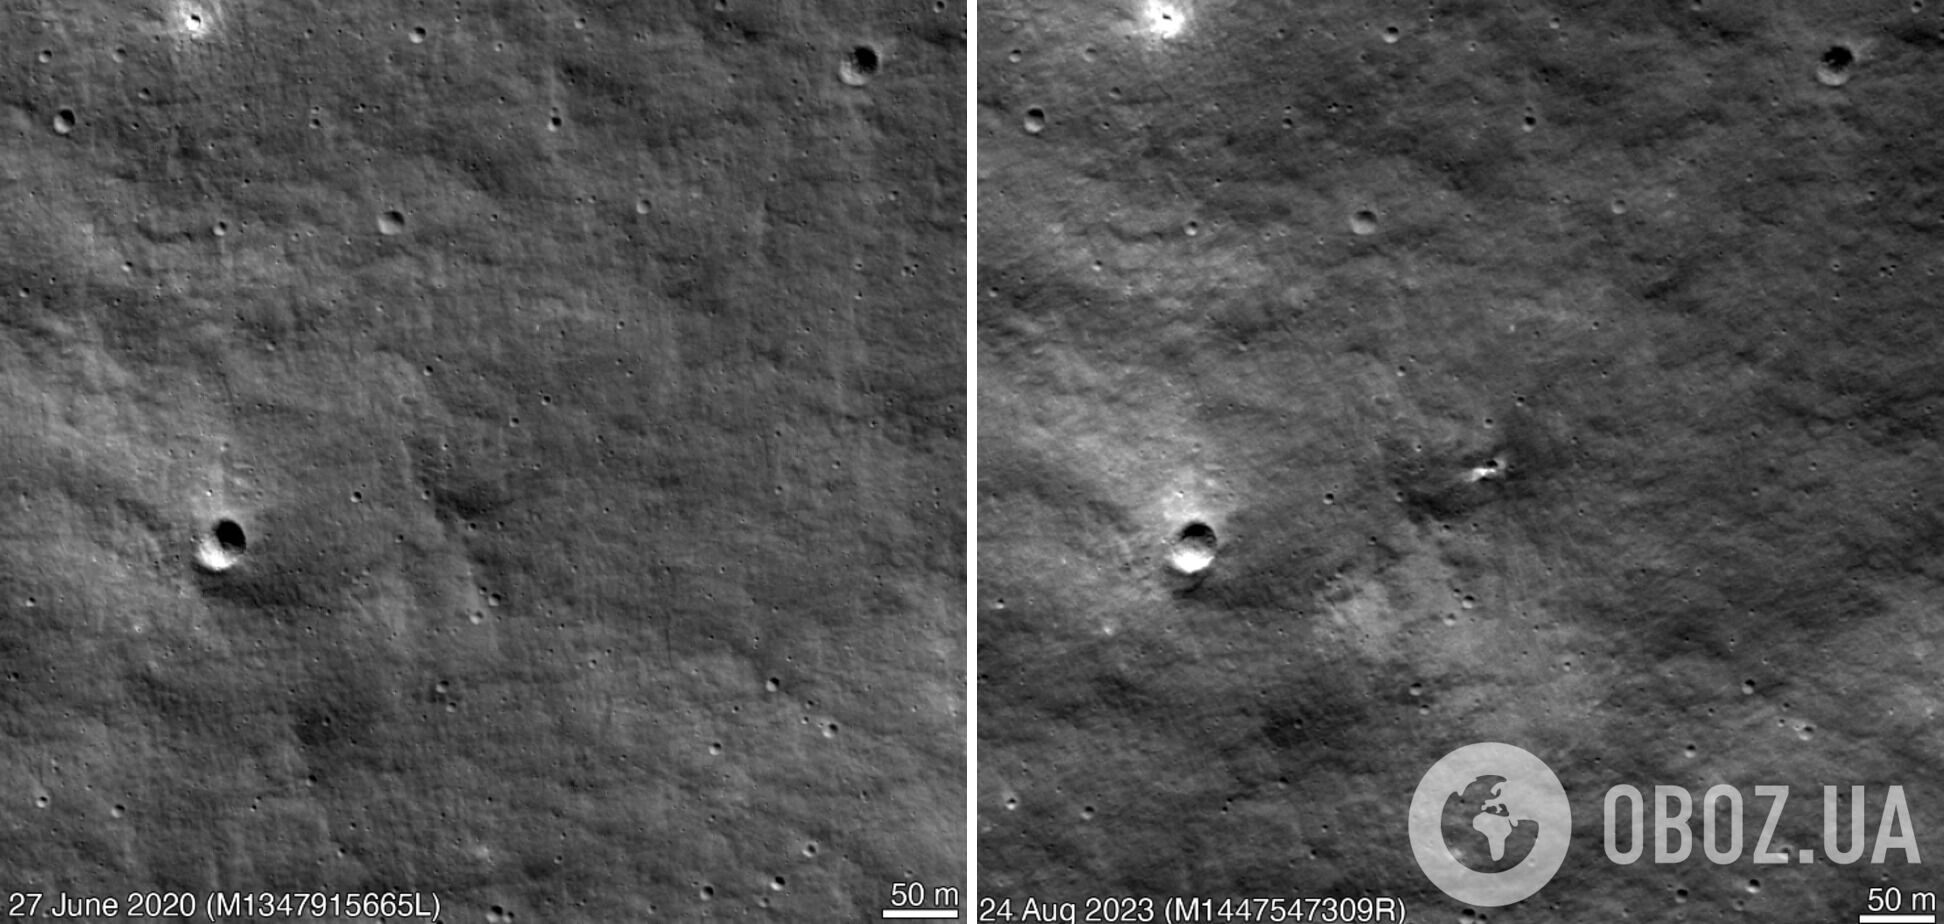 Росія здатна пробити дно не лише на Землі: від падіння модуля "Луна-25" на Місяці утворився кратер. Фото